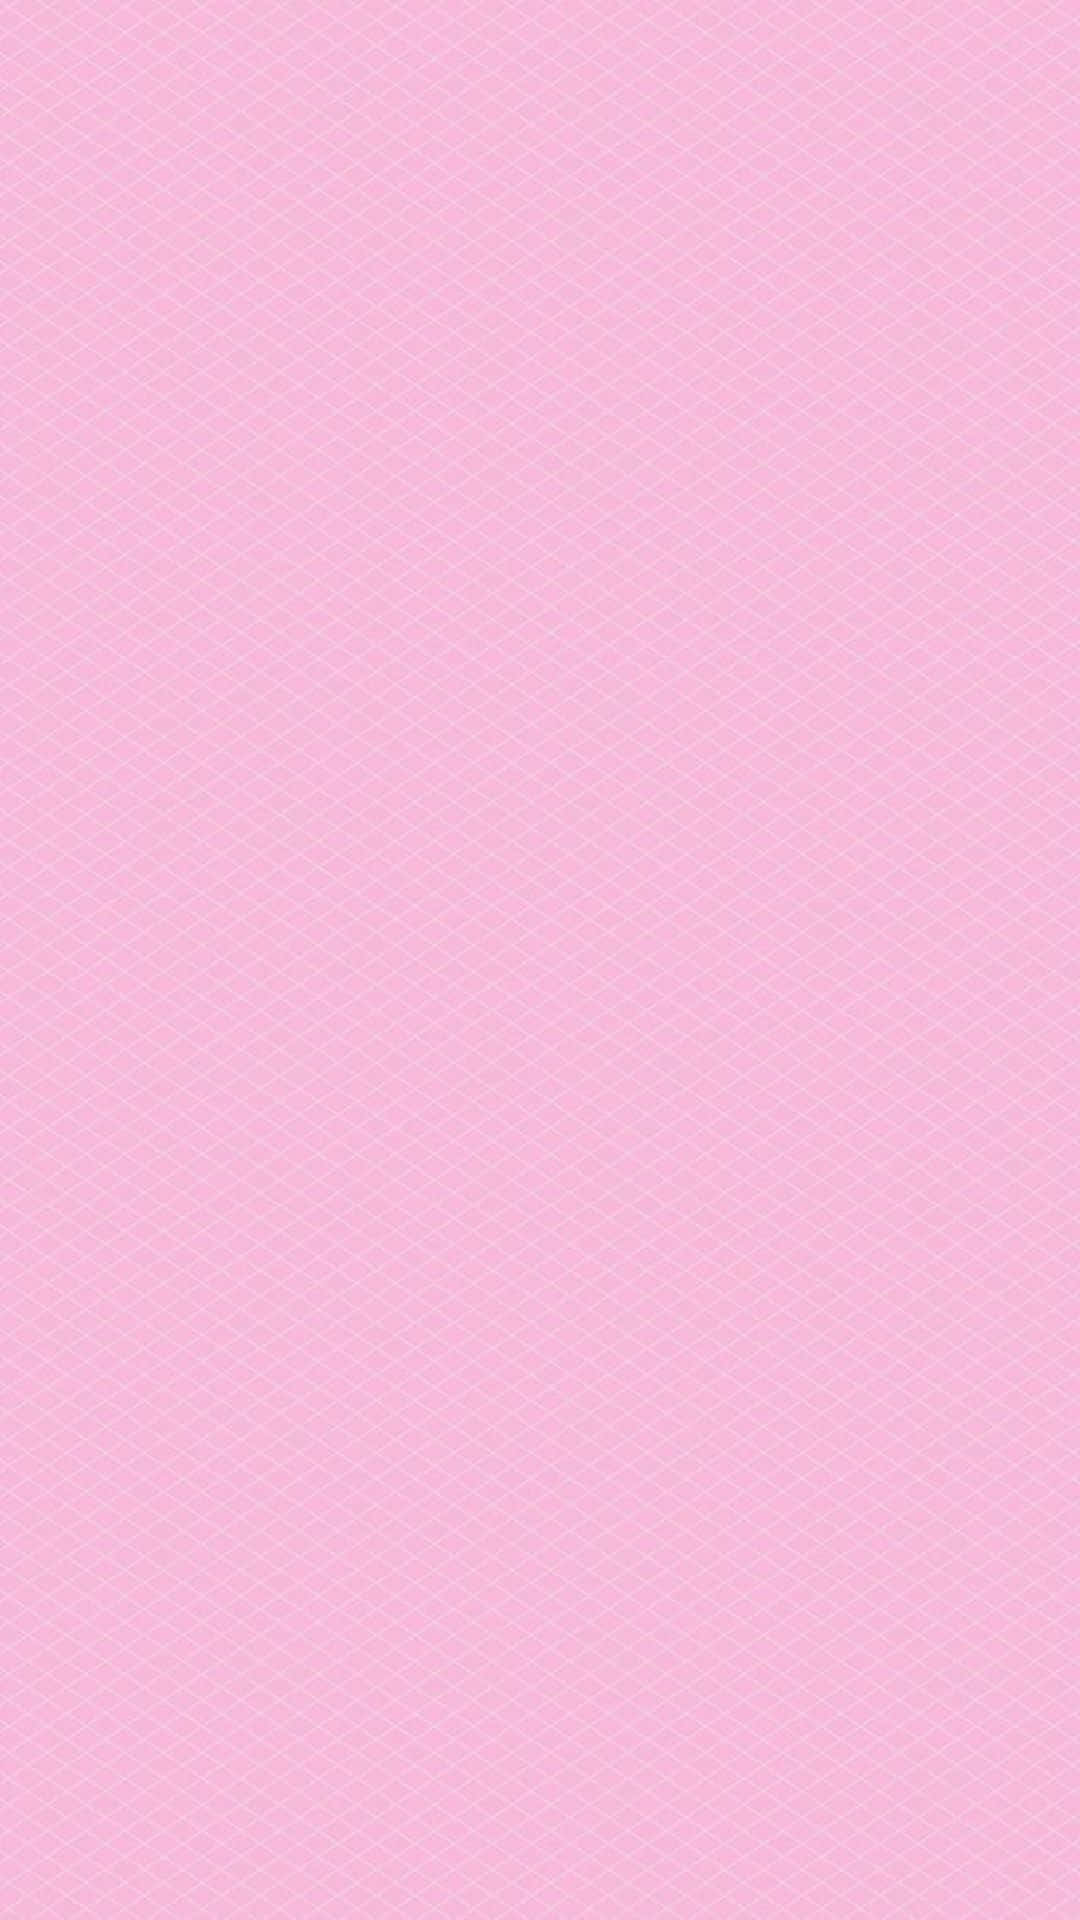 Tải về hình nền màu hồng đơn sắc - Trang Wallpapers.com (Download Pink Solid Color Wallpaper | Wallpapers.com): Bạn đang tìm kiếm một hình nền đơn sắc tuyệt đẹp và dễ thương? Hãy đến với trang Wallpapers.com và tải về ngay hình nền màu hồng đơn sắc. Sự đơn giản và đẹp mắt của nó chắc chắn sẽ làm bạn hài lòng. Hãy xem hình ảnh liên quan để hiểu rõ hơn về nó!